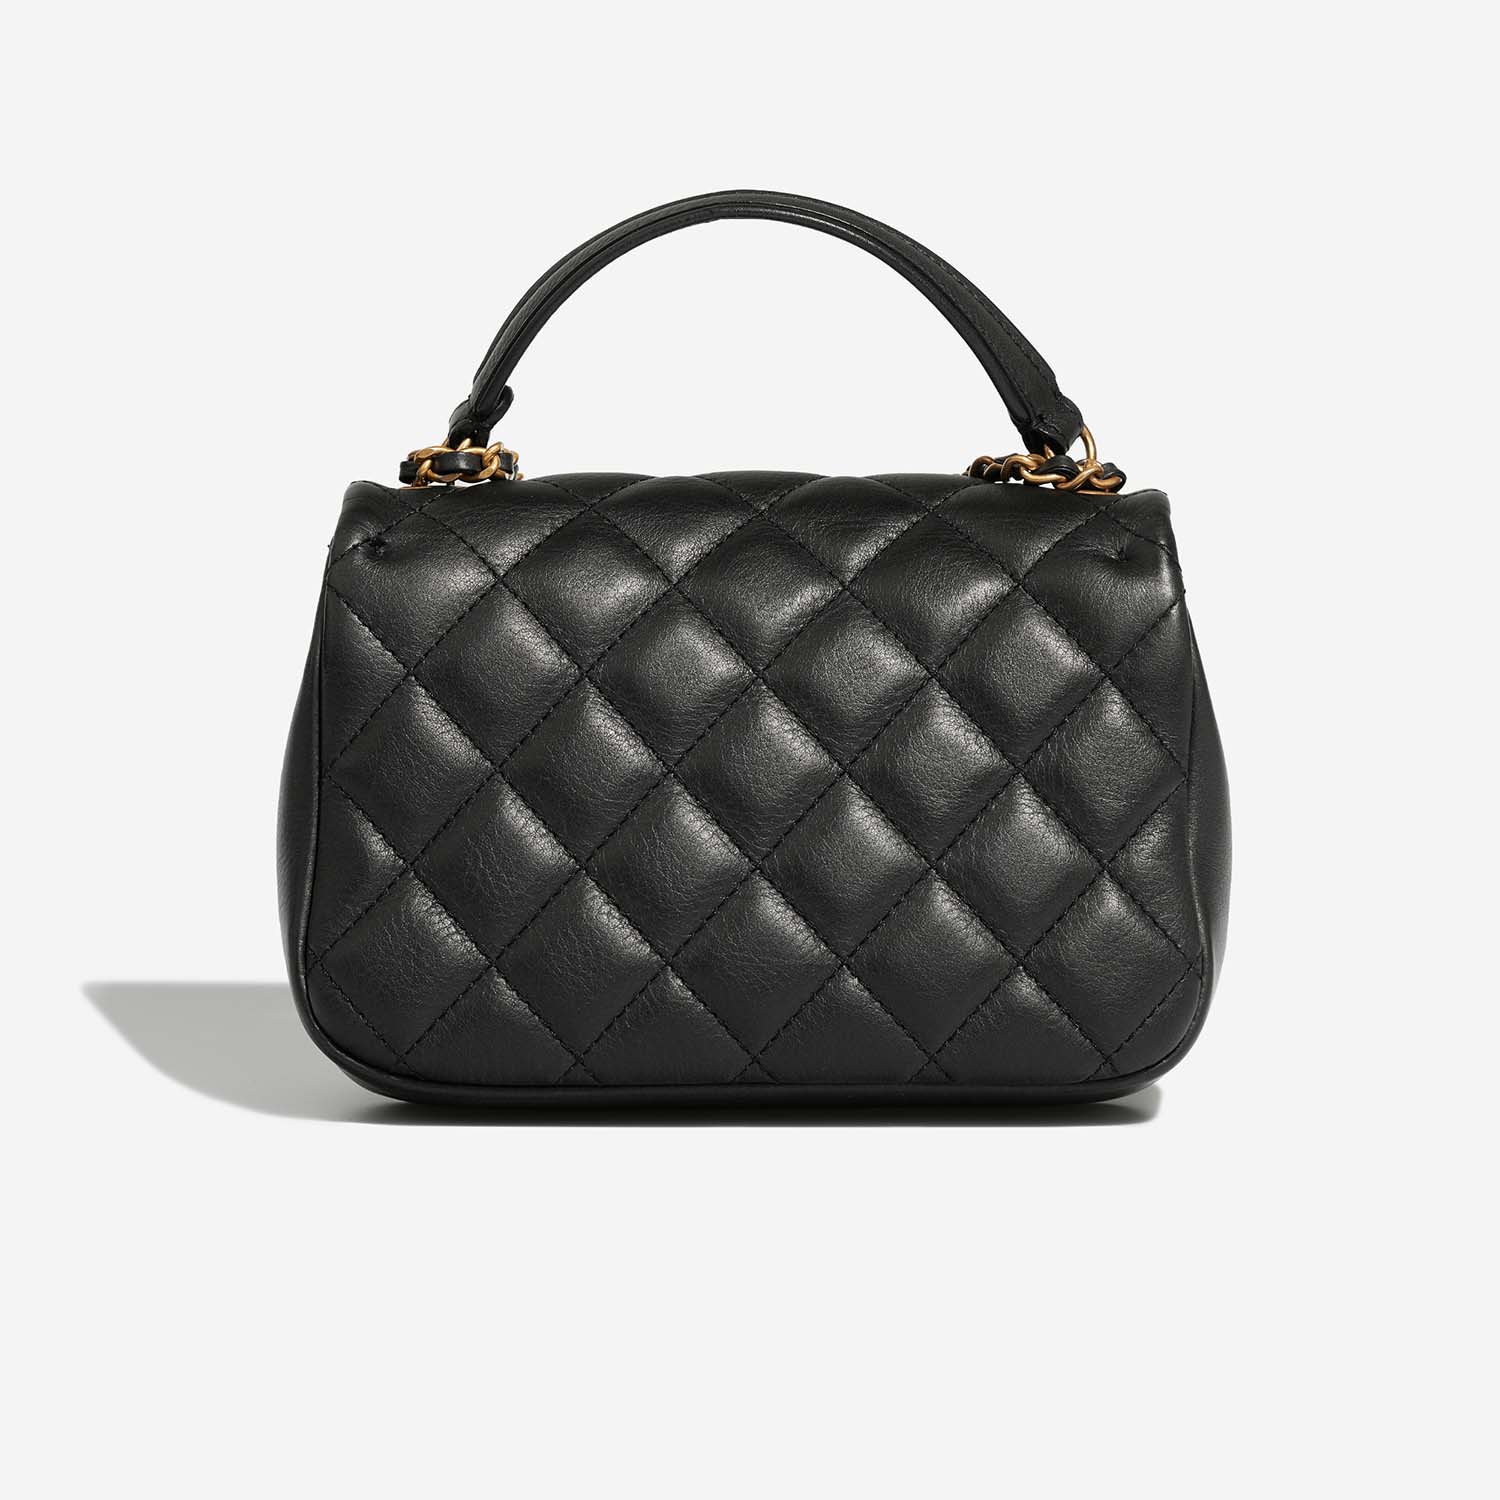 Chanel TimelessHandle Small Black Back | Verkaufen Sie Ihre Designer-Tasche auf Saclab.com